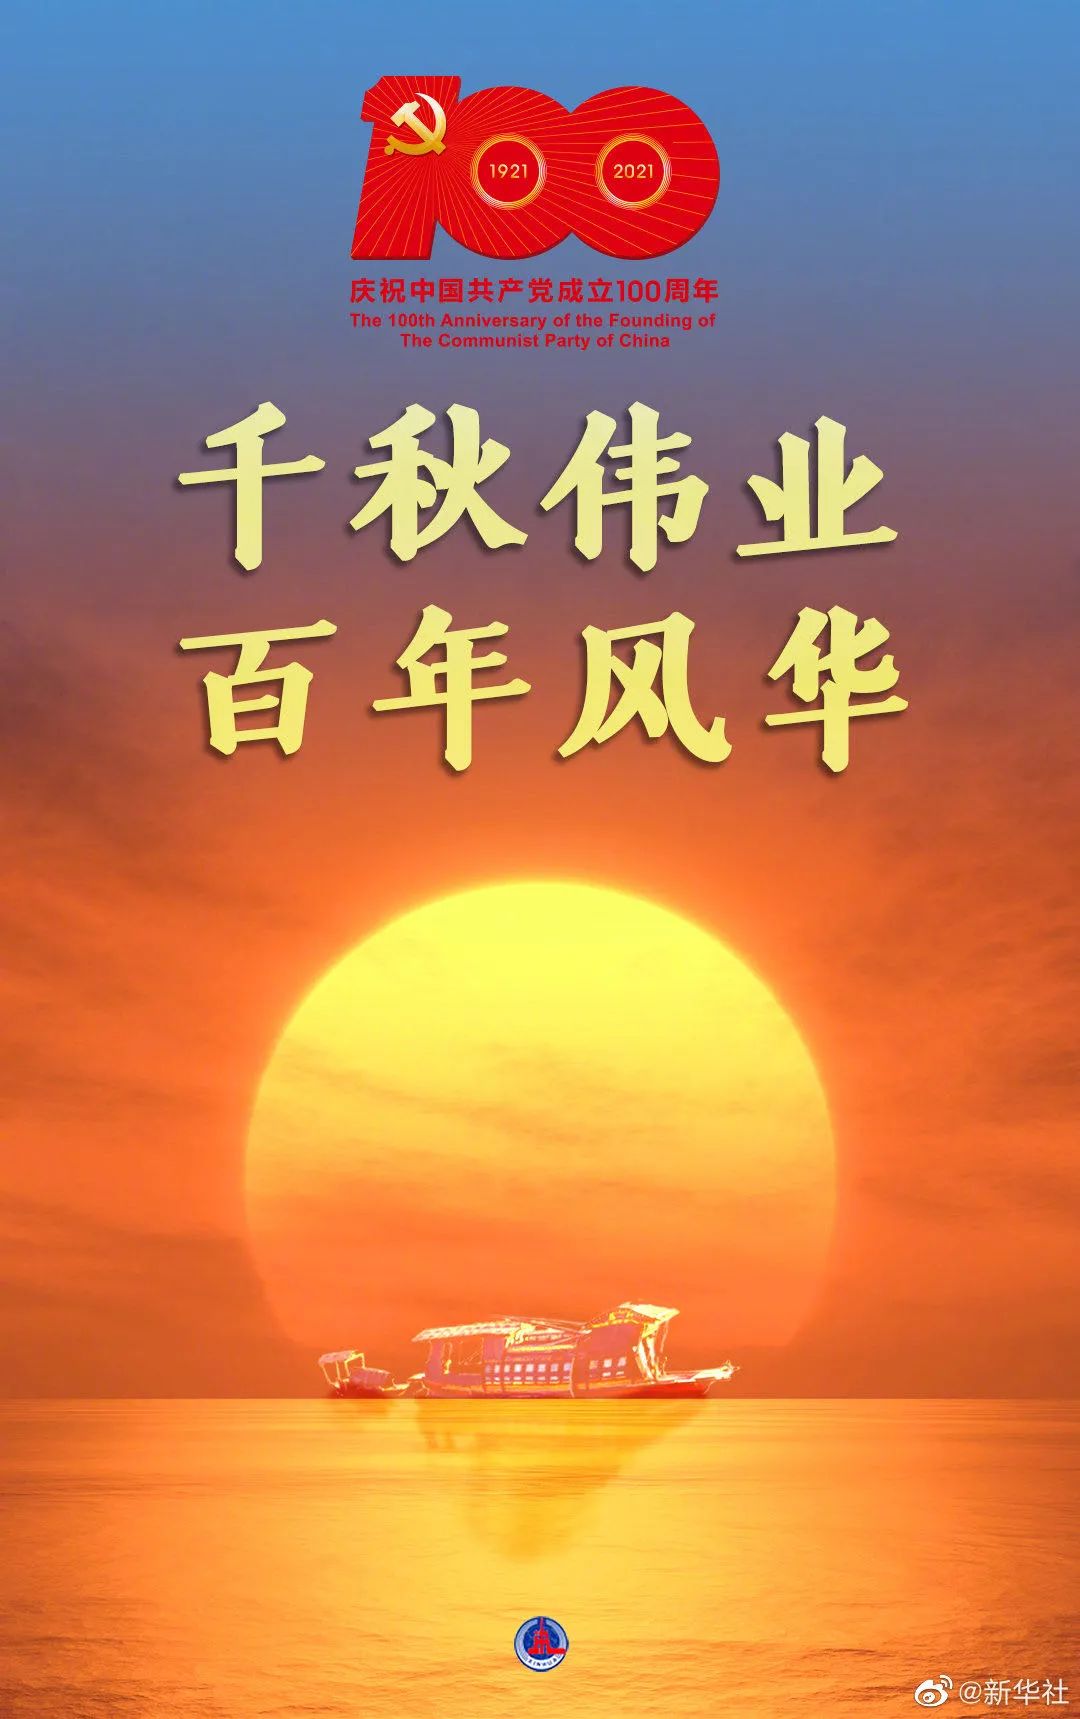 迎接建党百年 杭州径山禅寺举行升国旗仪式、观看庆典直播